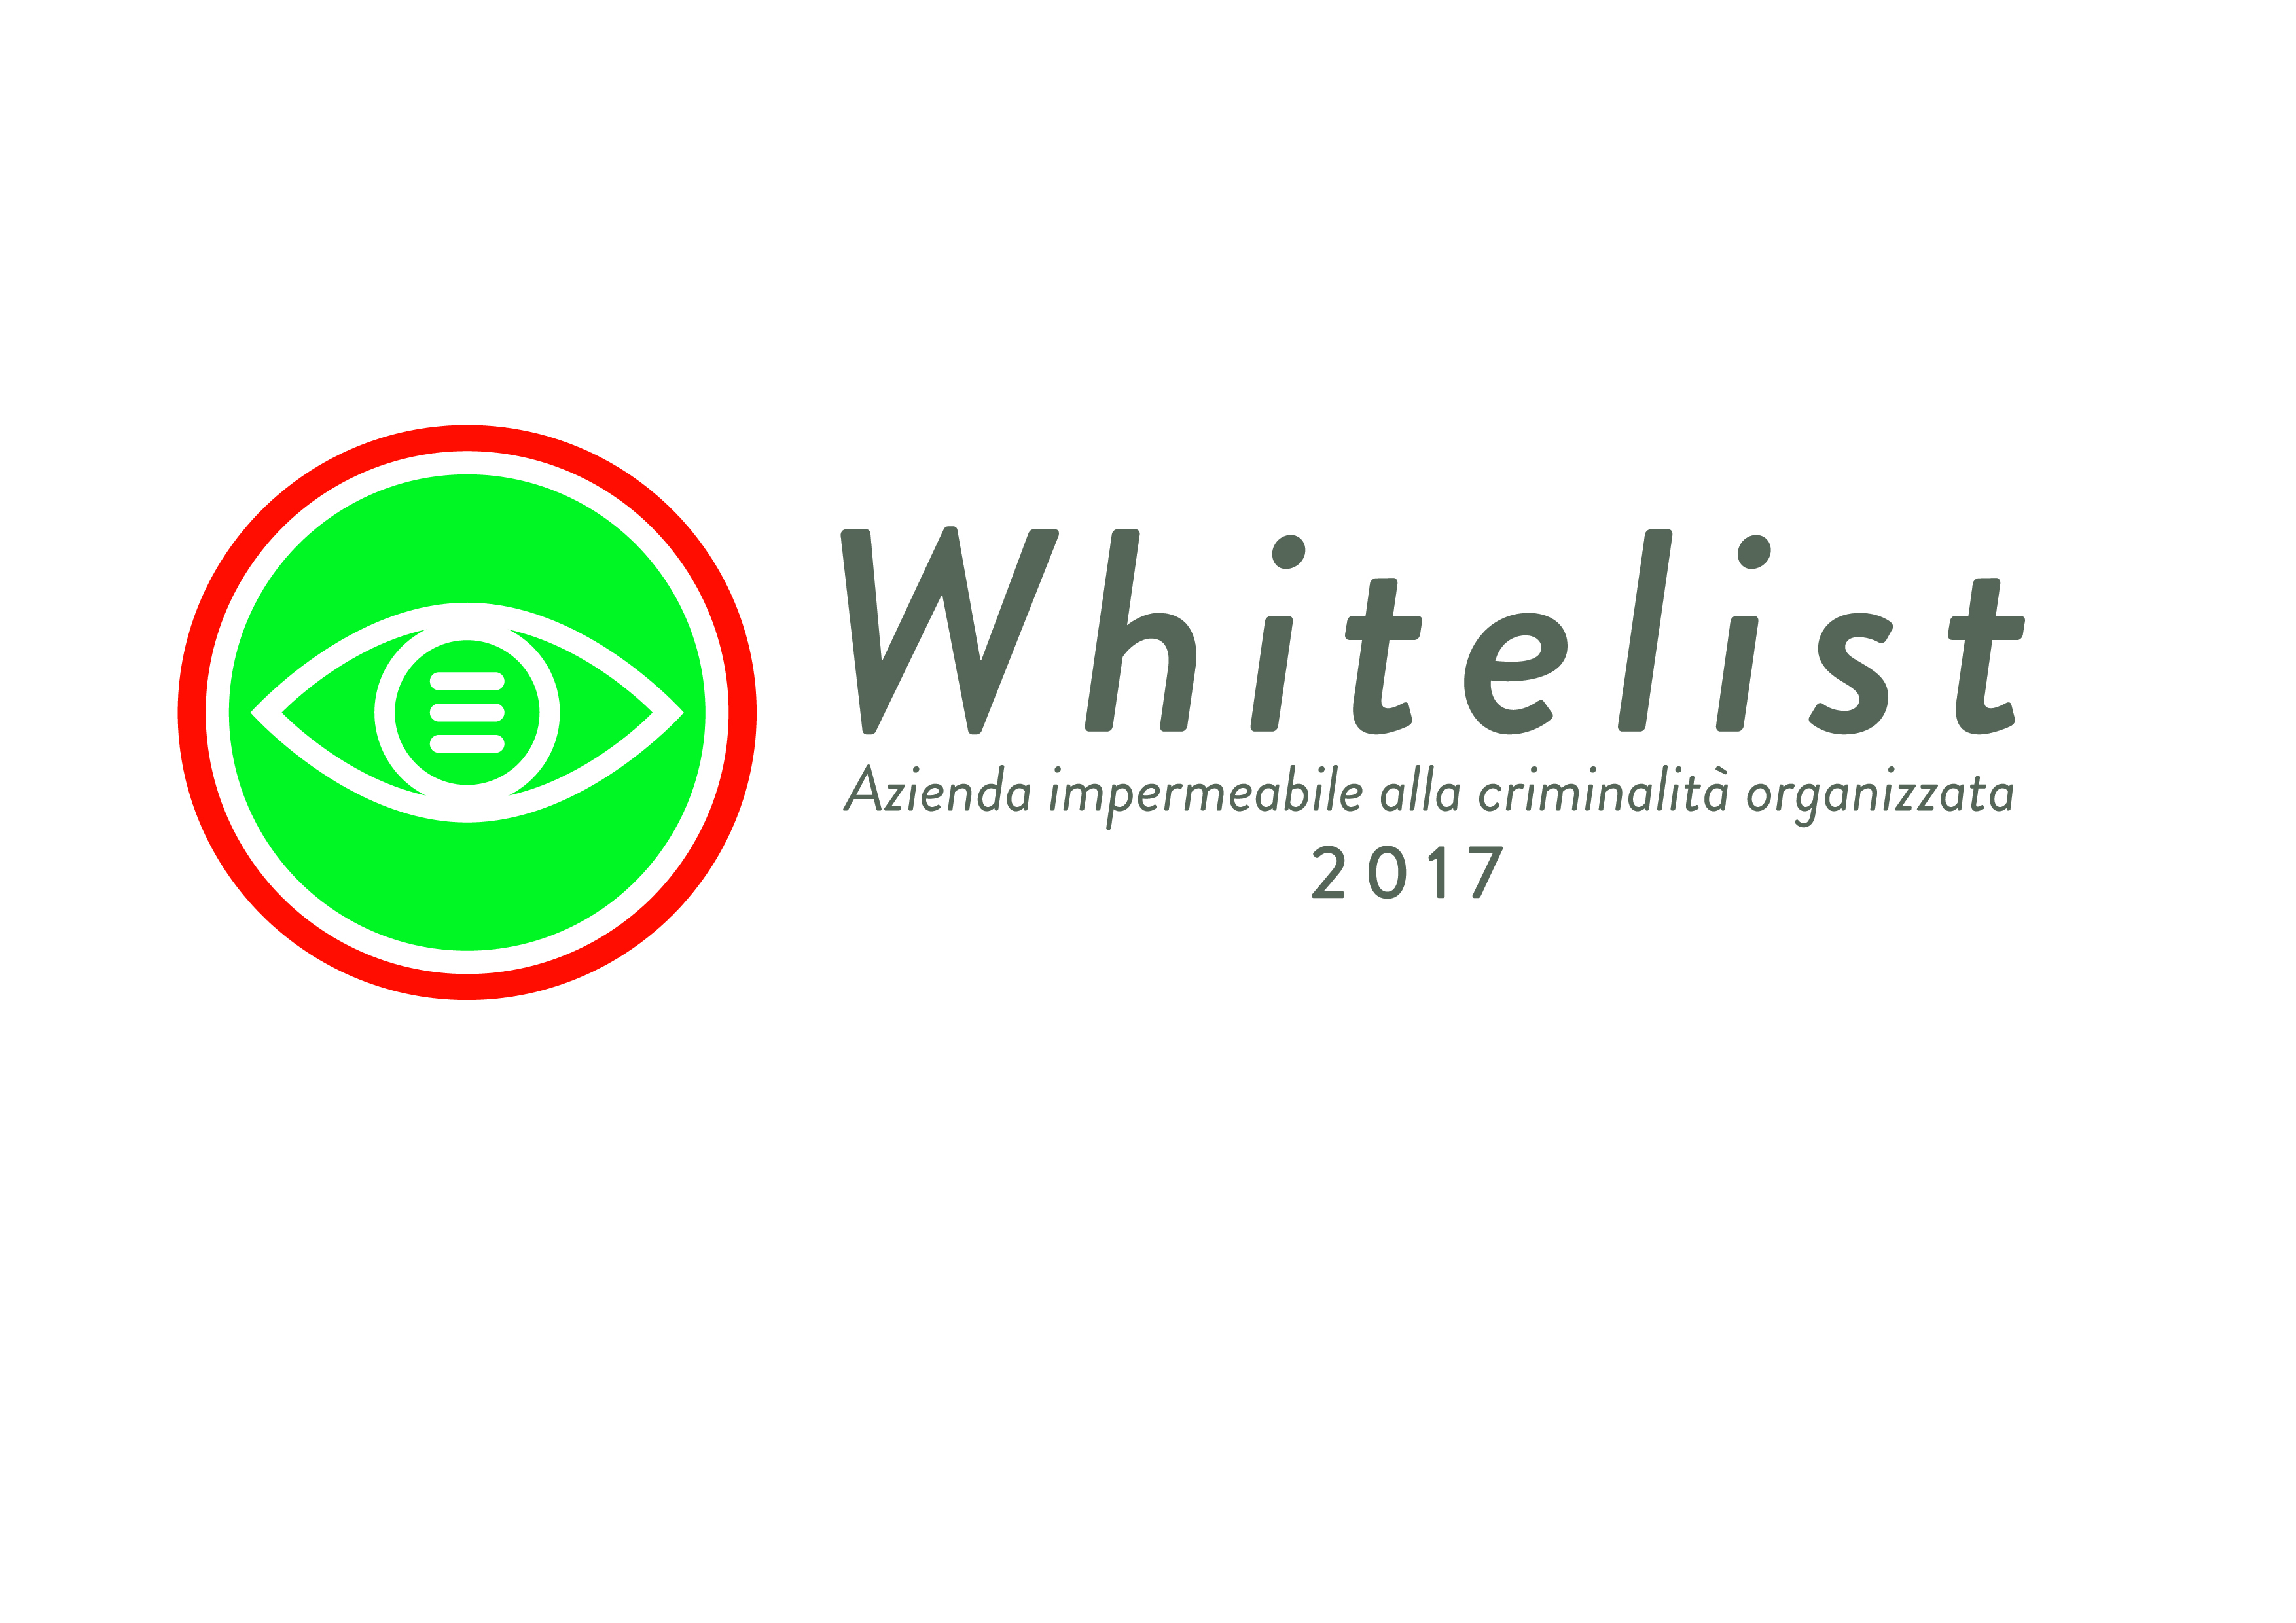 Whitelist - Marchio legalità